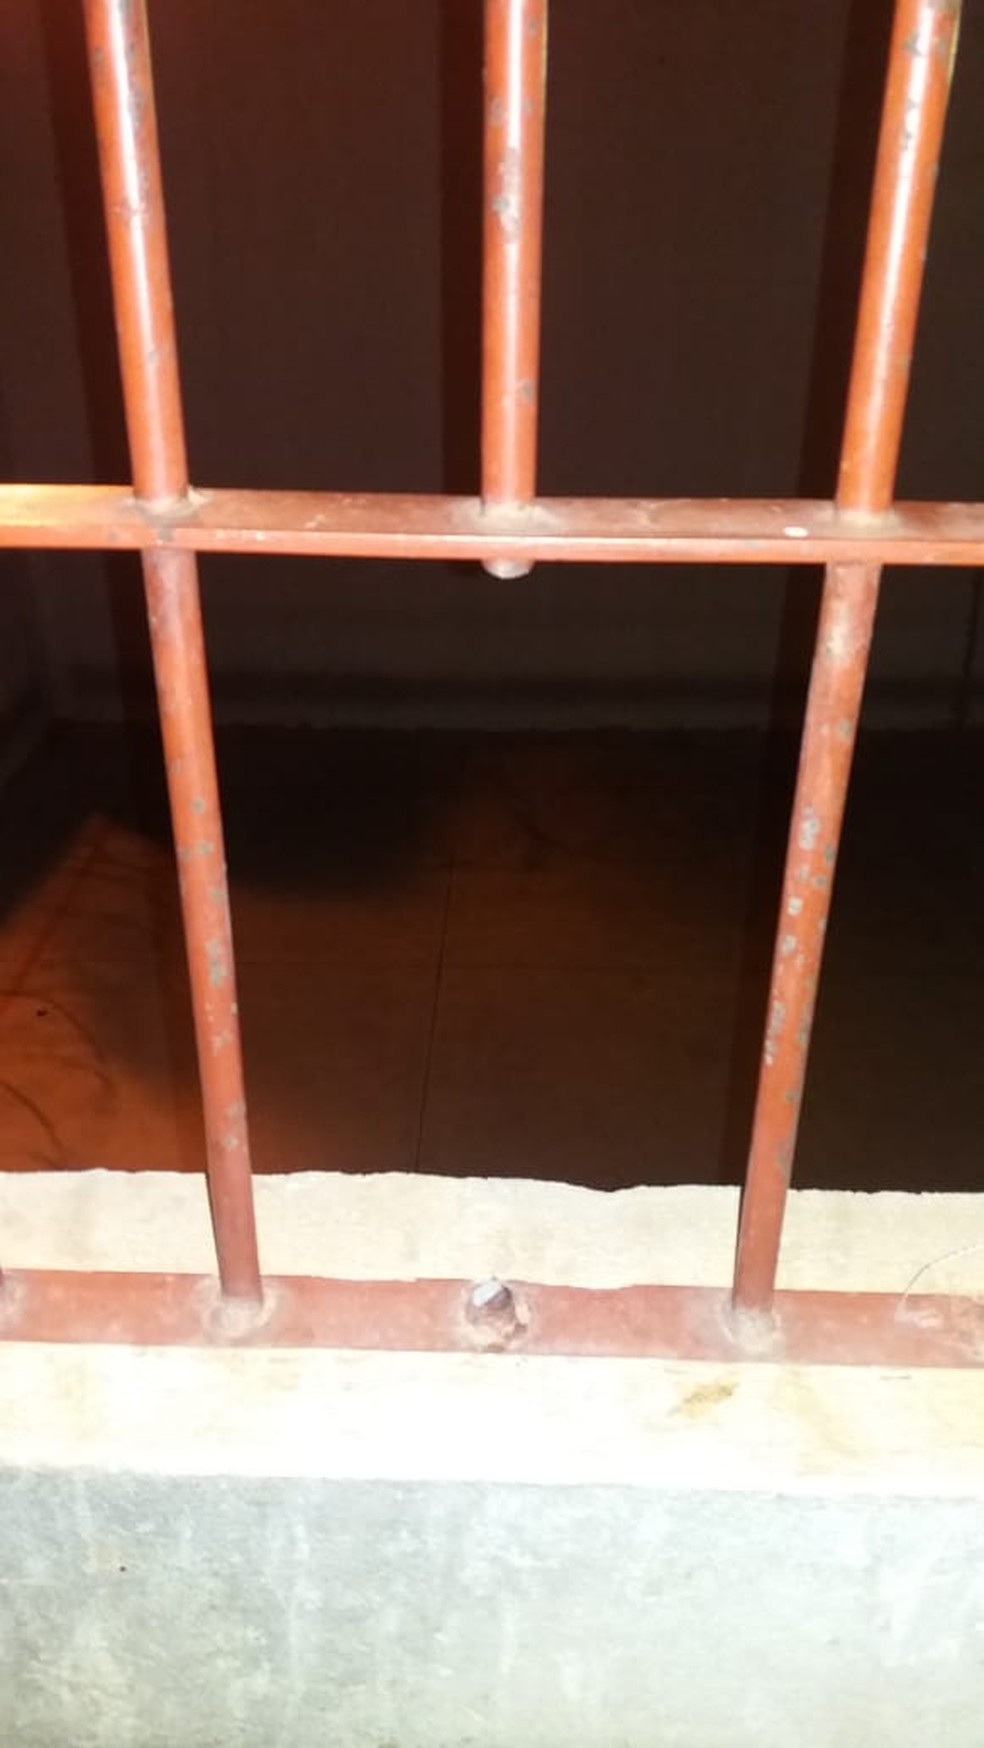 Uma das grades serradas na penitenciária — Foto: Arquivo Pessoal